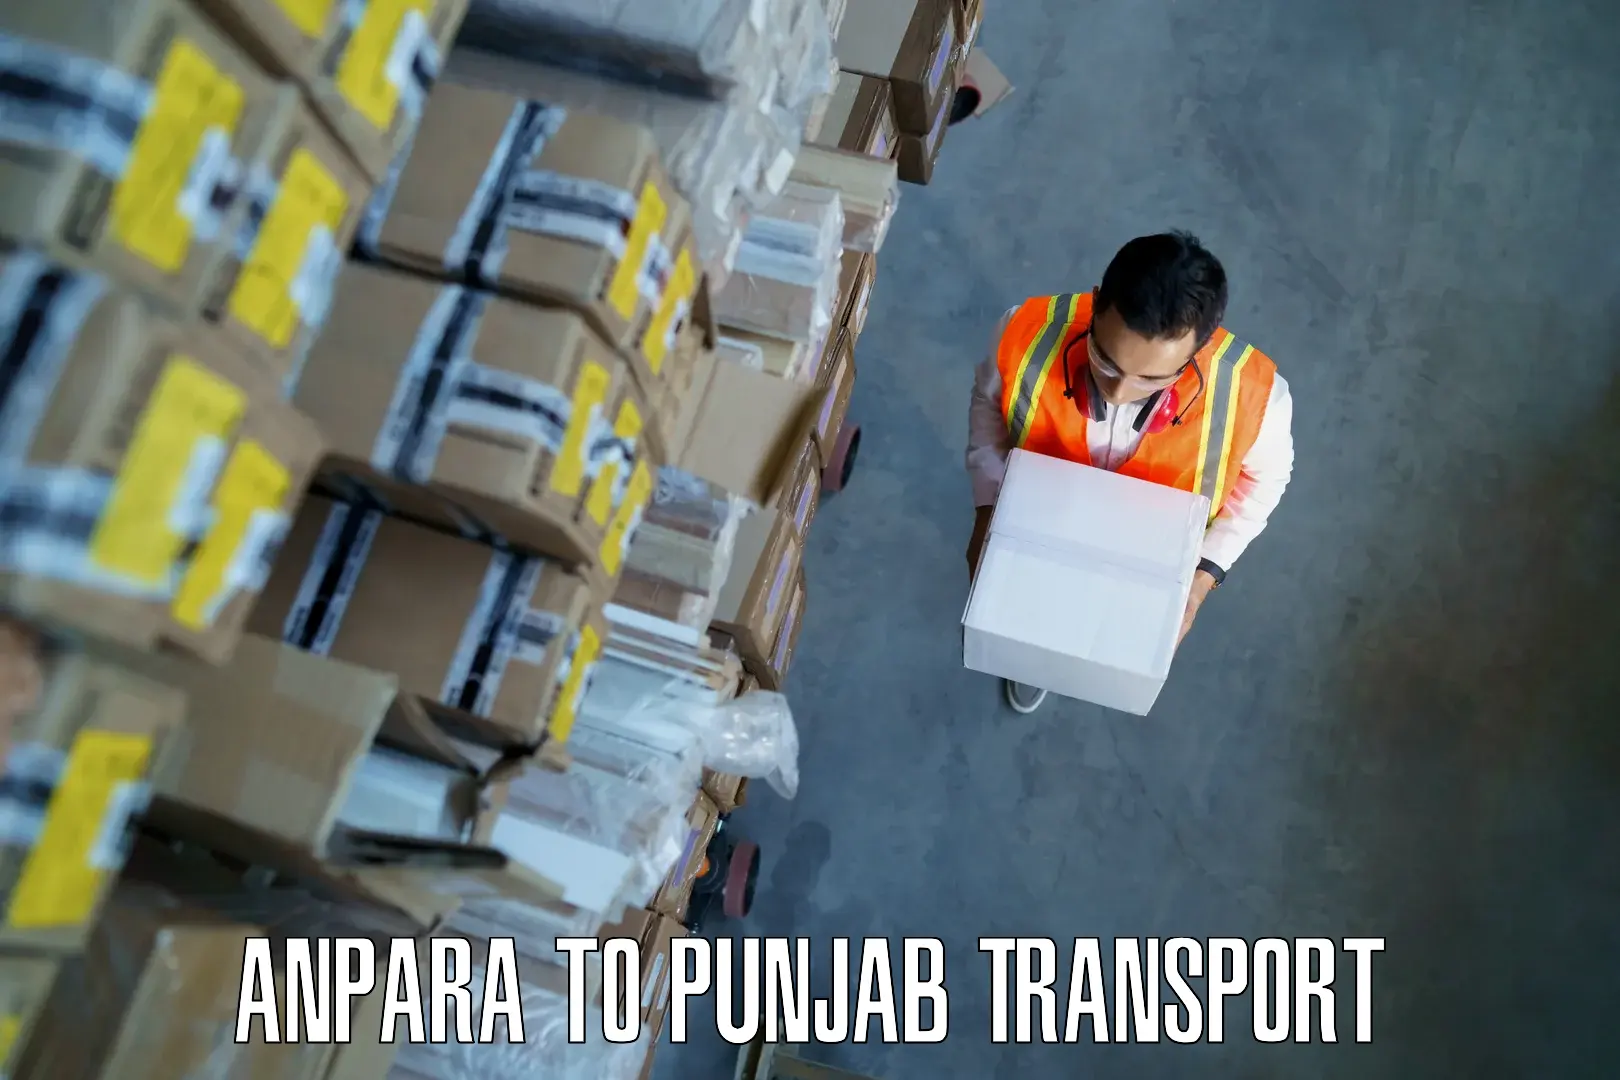 Furniture transport service Anpara to Jalandhar